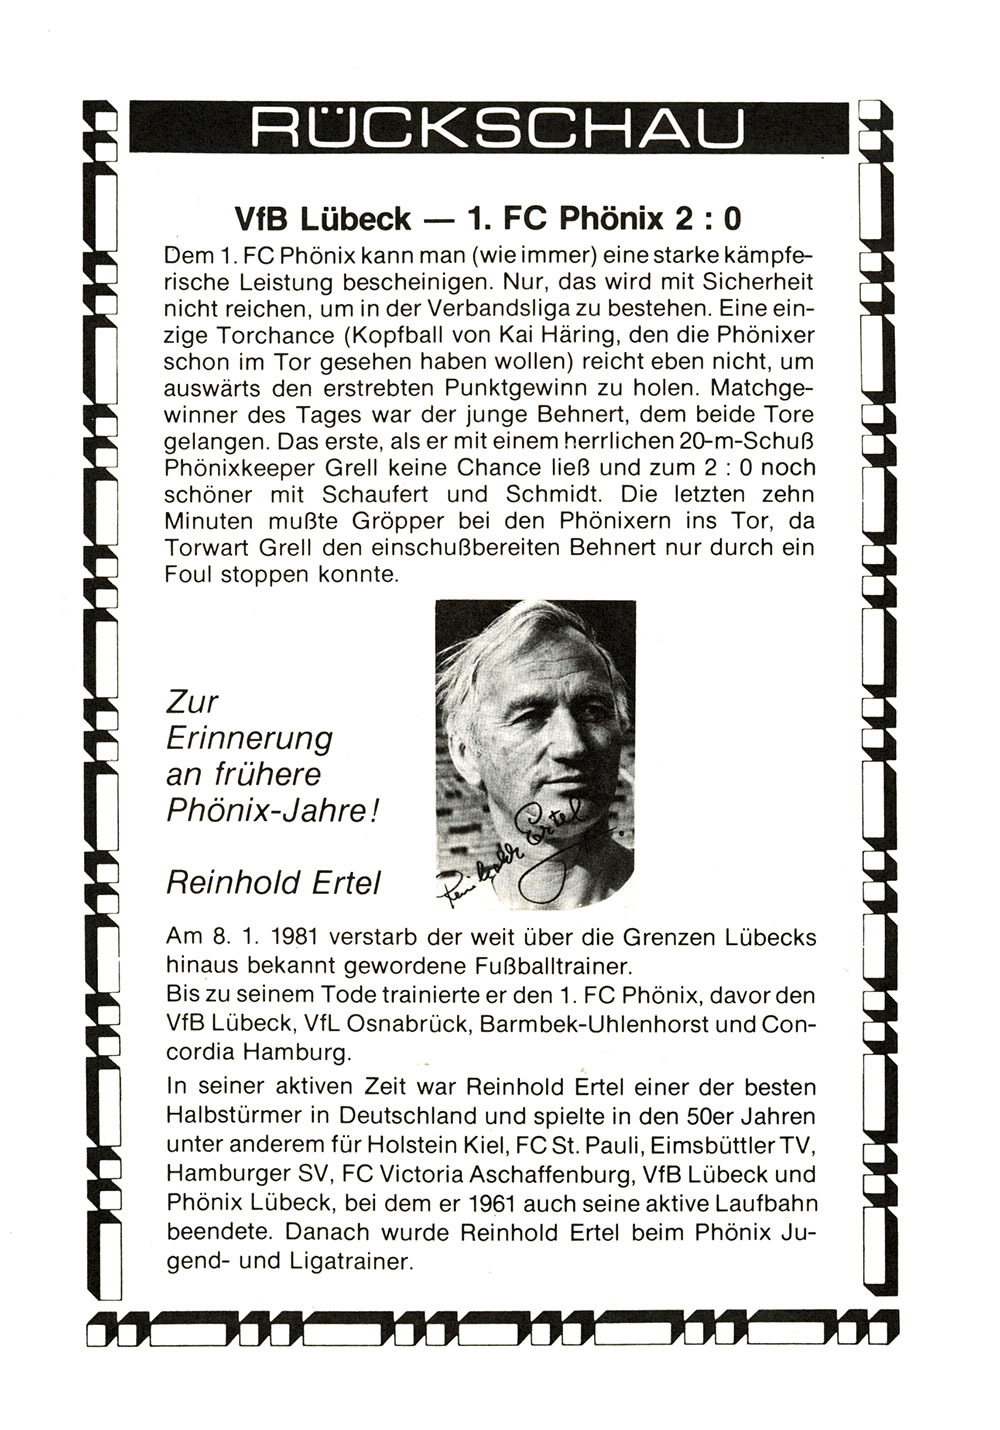 Der PHÖNIX Express v. 8.1.1984